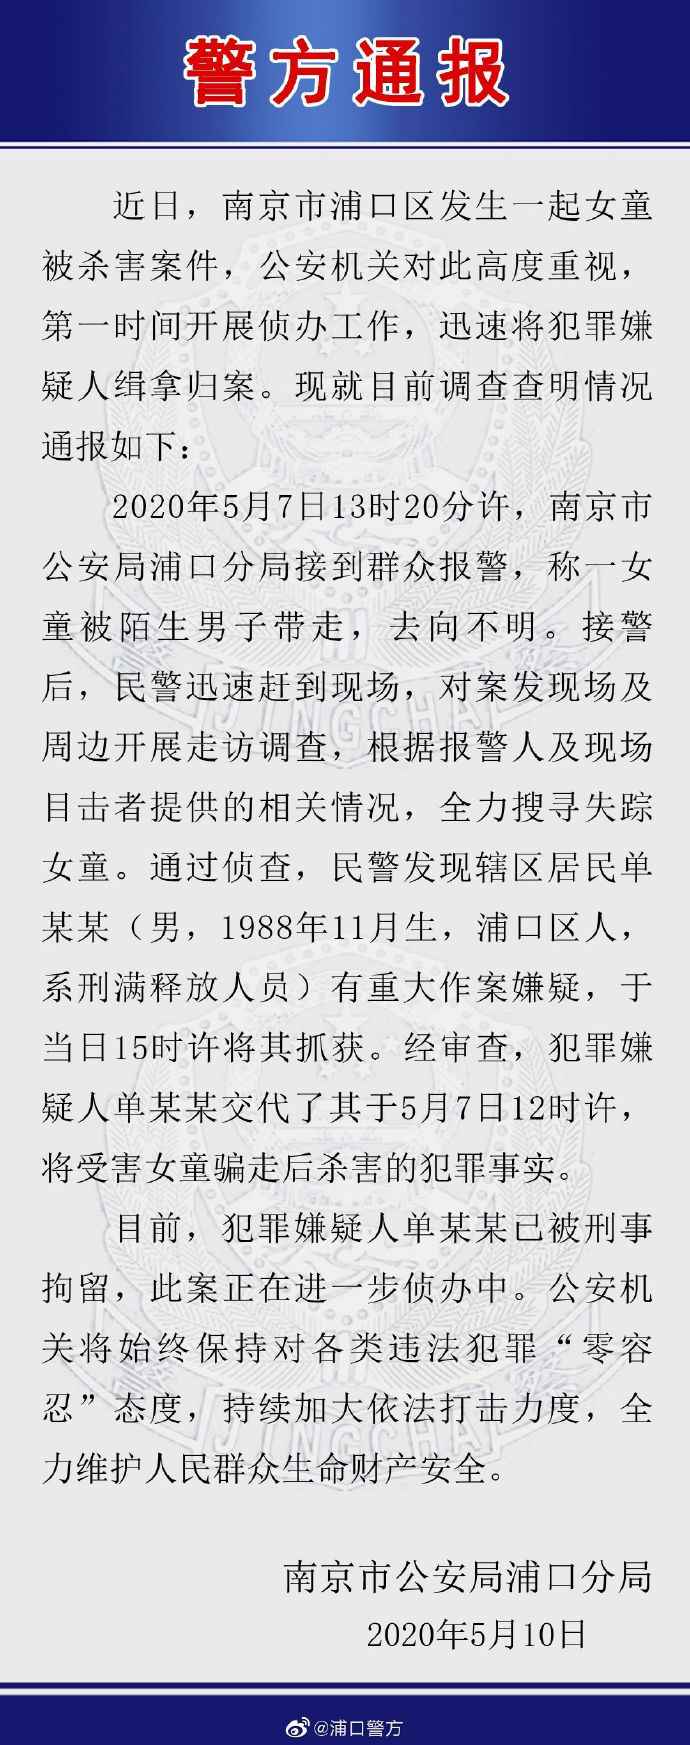 南京一女童被男子骗走杀害 嫌疑人系刑满释放人员